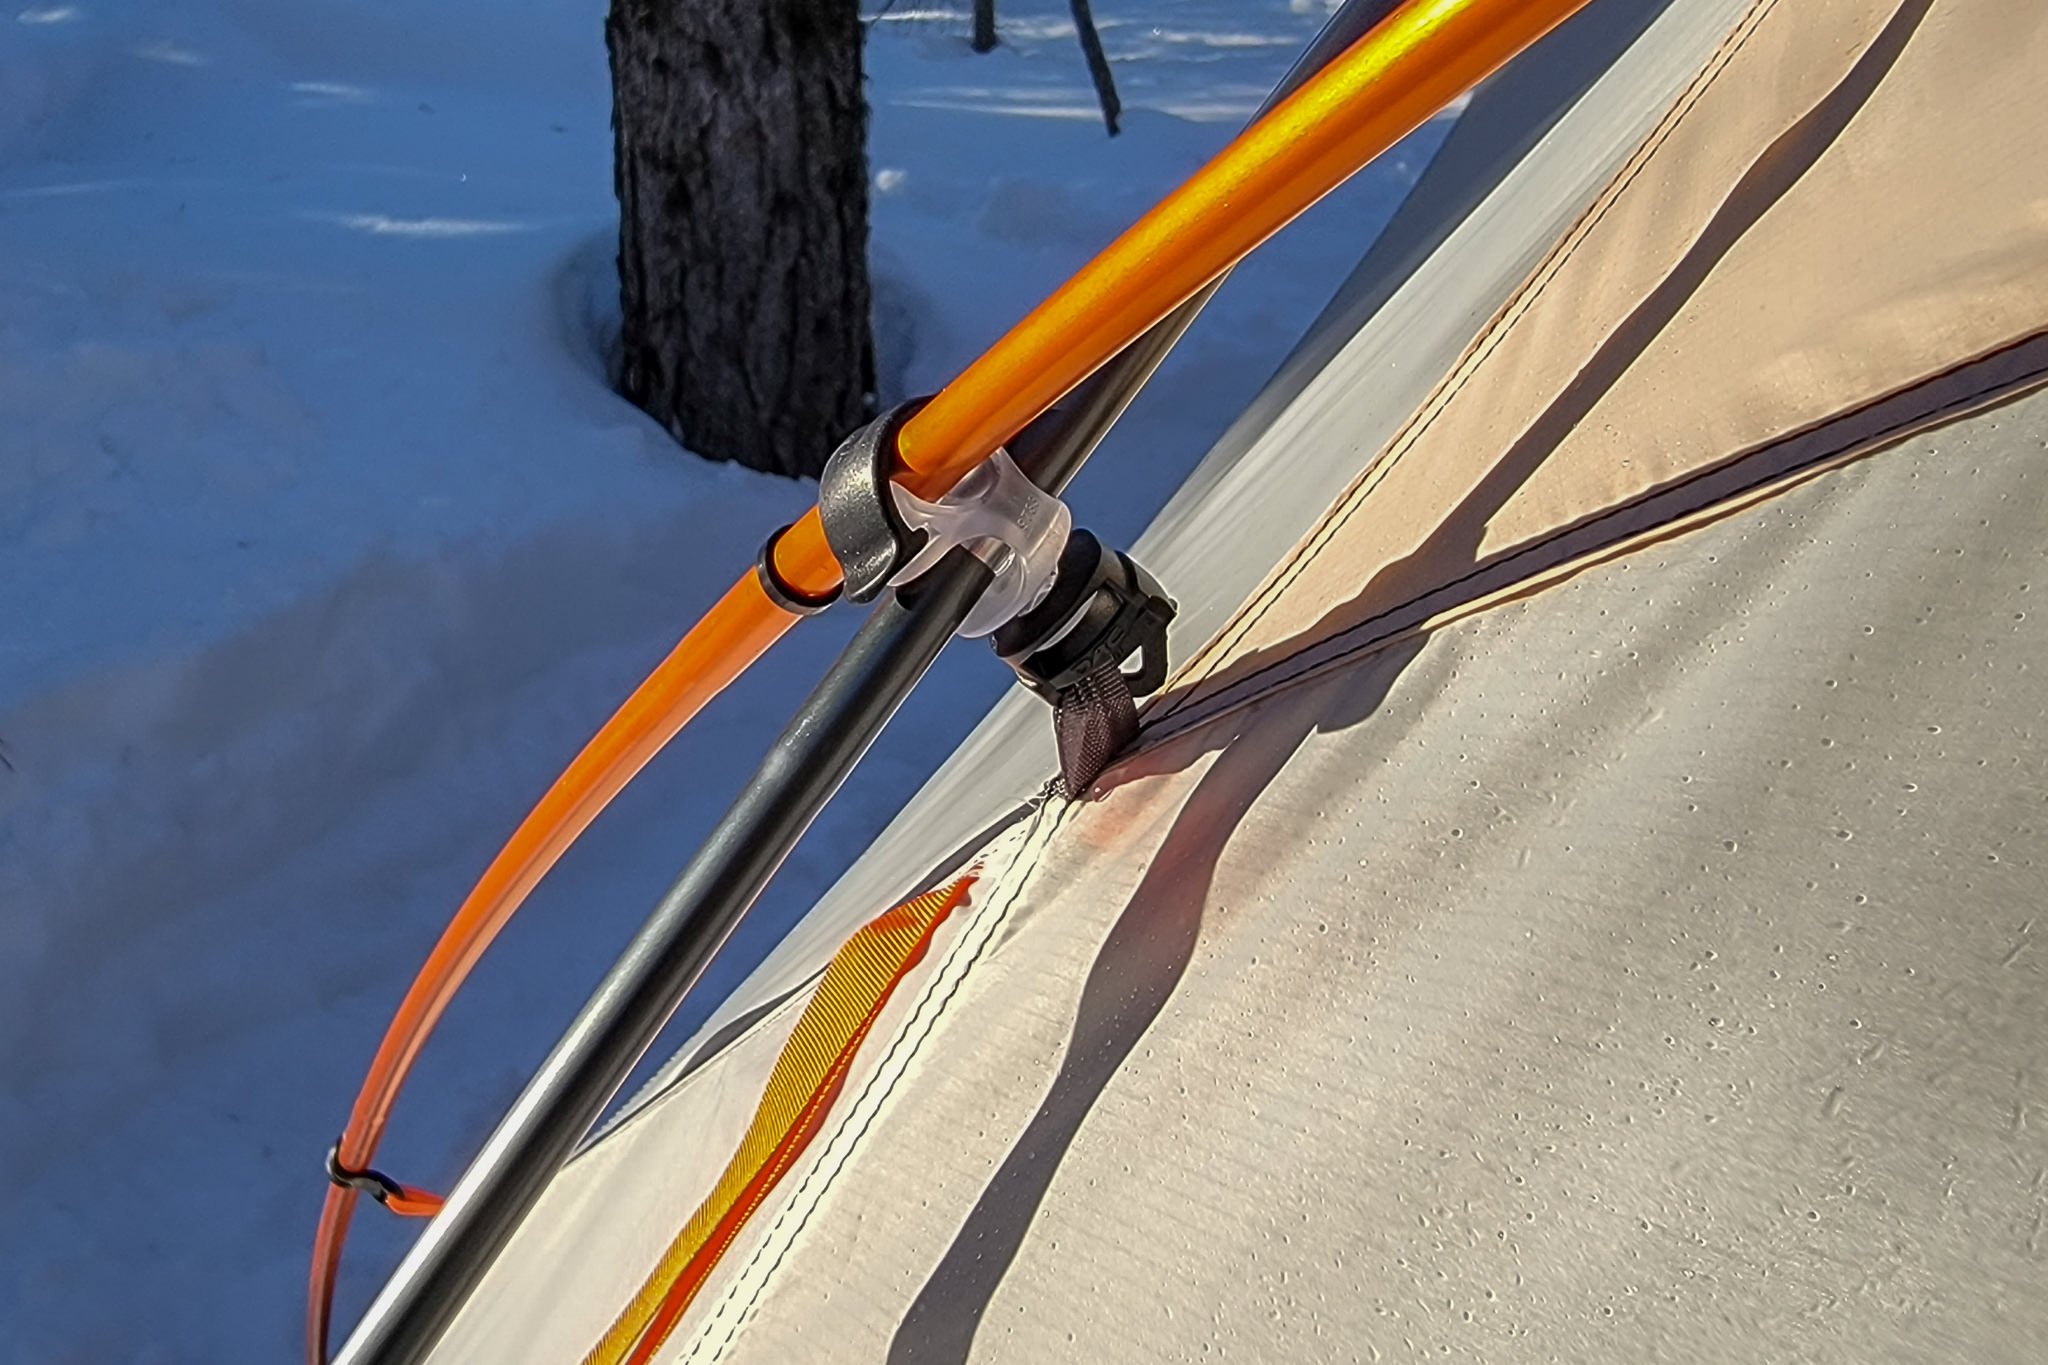 Closeup of the NEMO Kunai Tent's pole attachment system